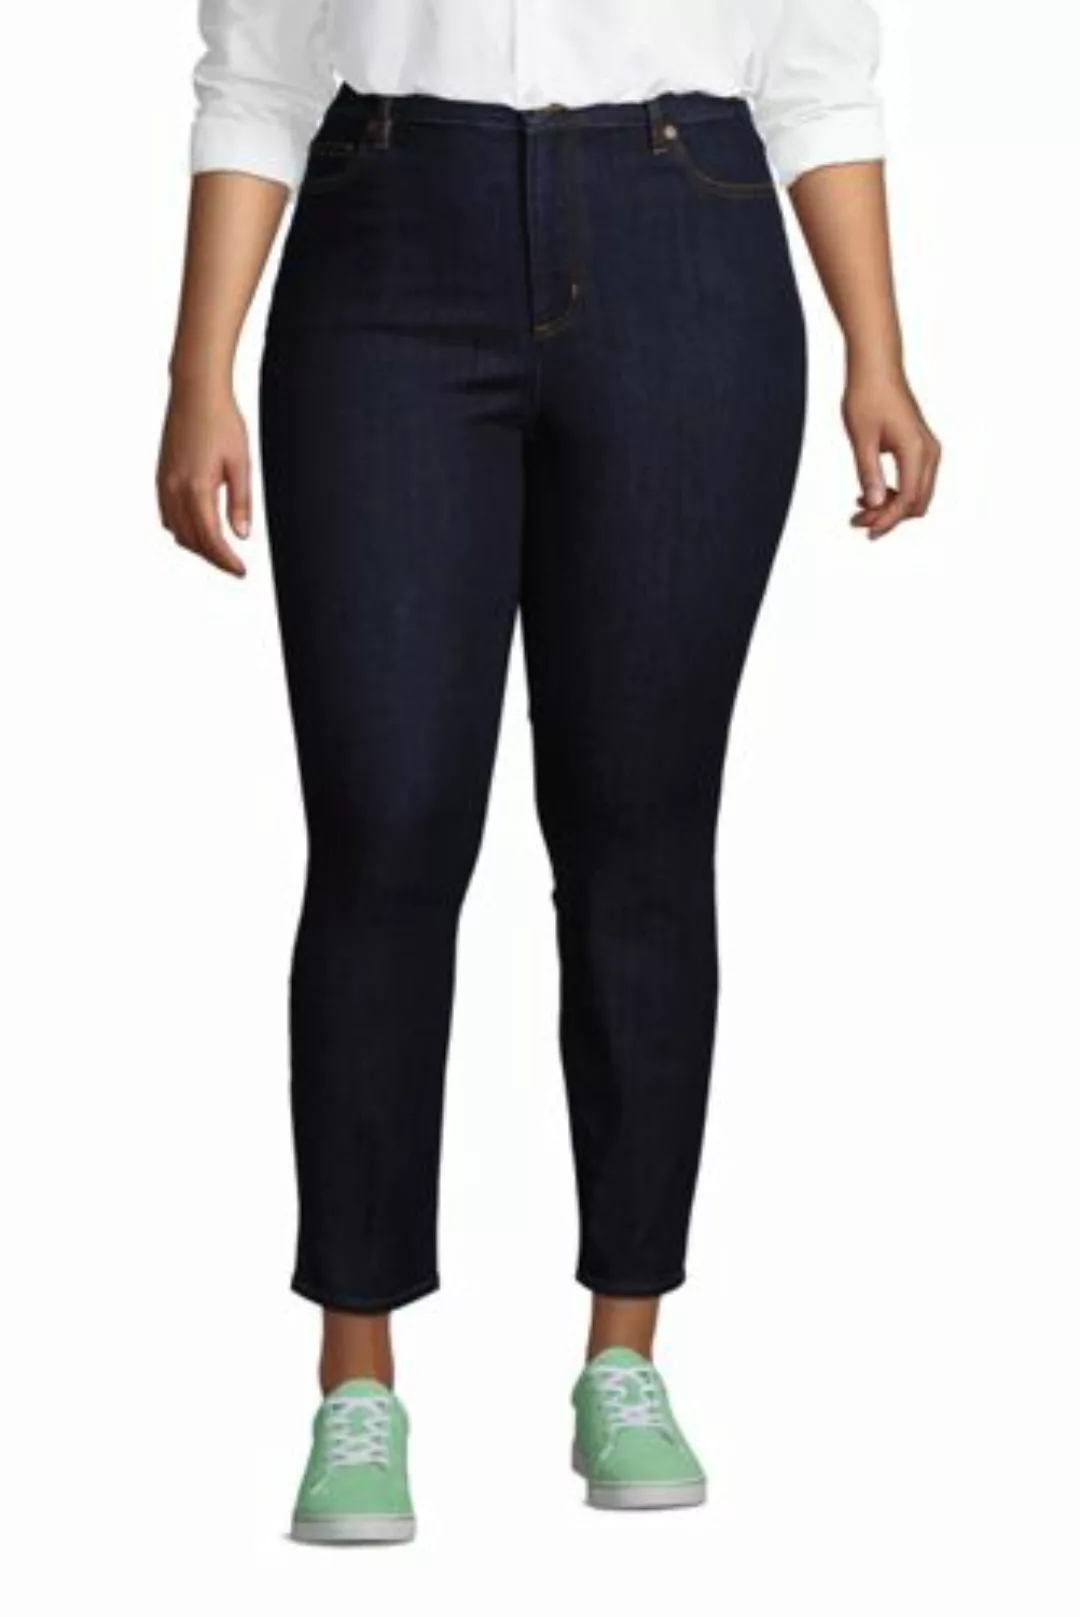 Slim Fit Öko Jeans High Waist in großen Größen, Damen, Größe: 52 Plusgrößen günstig online kaufen